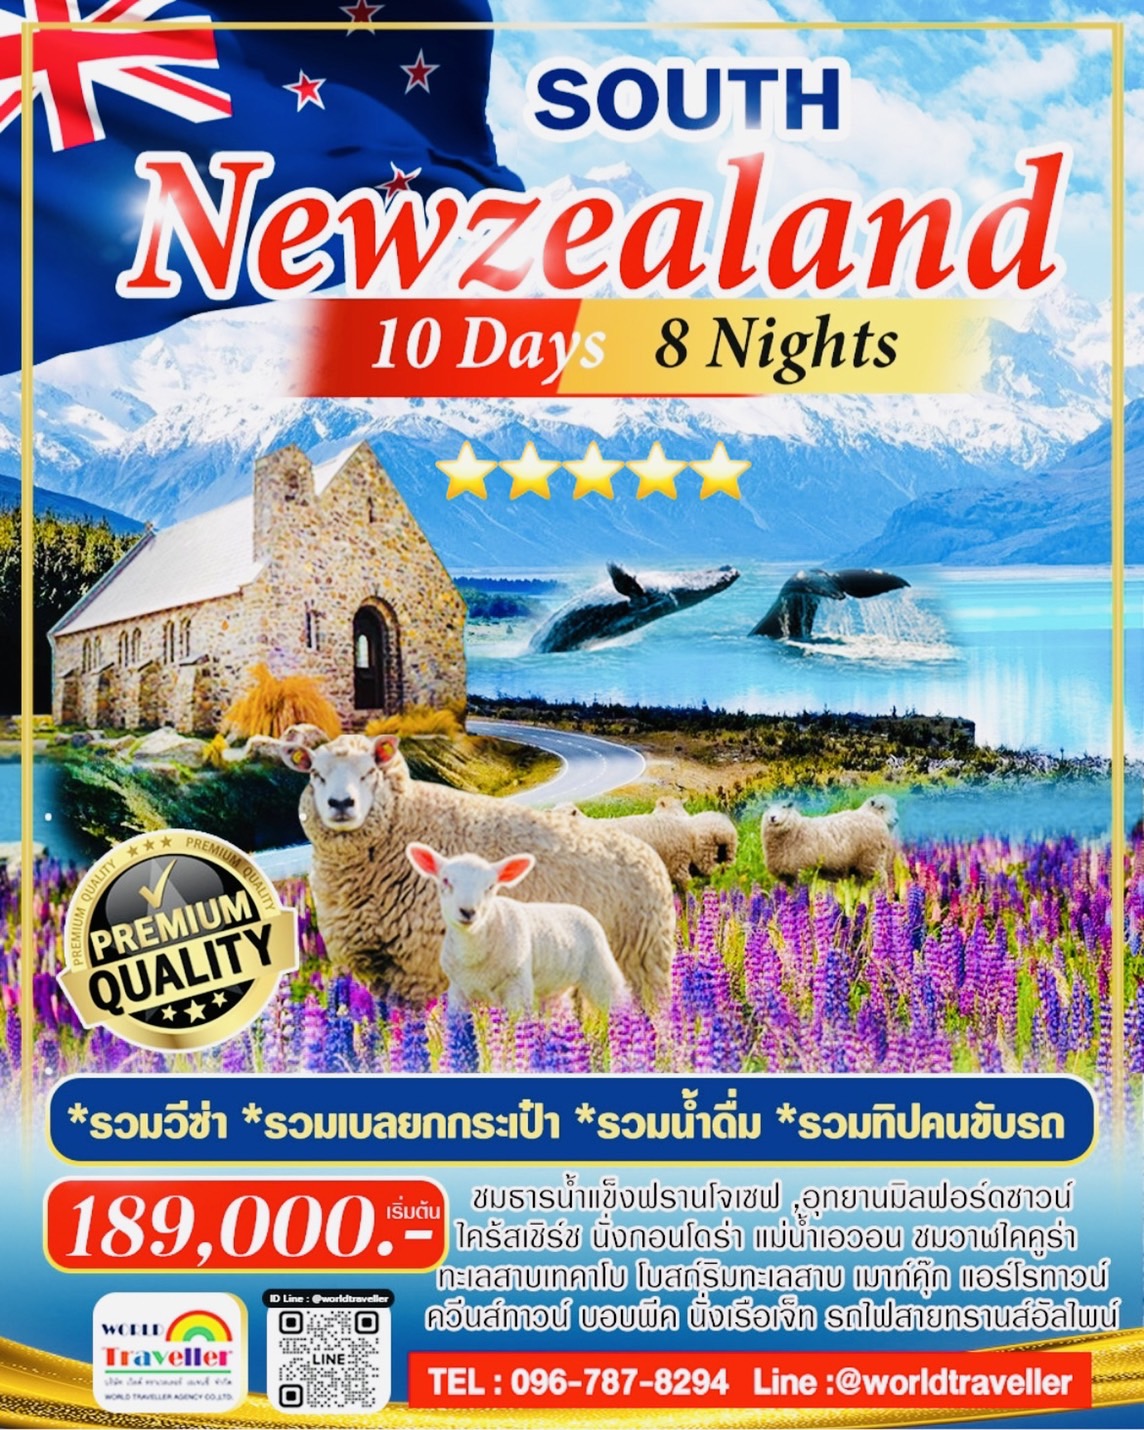 NEW ZEALAND 10 DAYS UNSEEN นิวซีแลนด์-เกาะใต้10วัน8คืน+มิลฟอร์ดซาวน์+รถไฟอัลไพน์ วาฬไคคูร่า เปิดจอง!